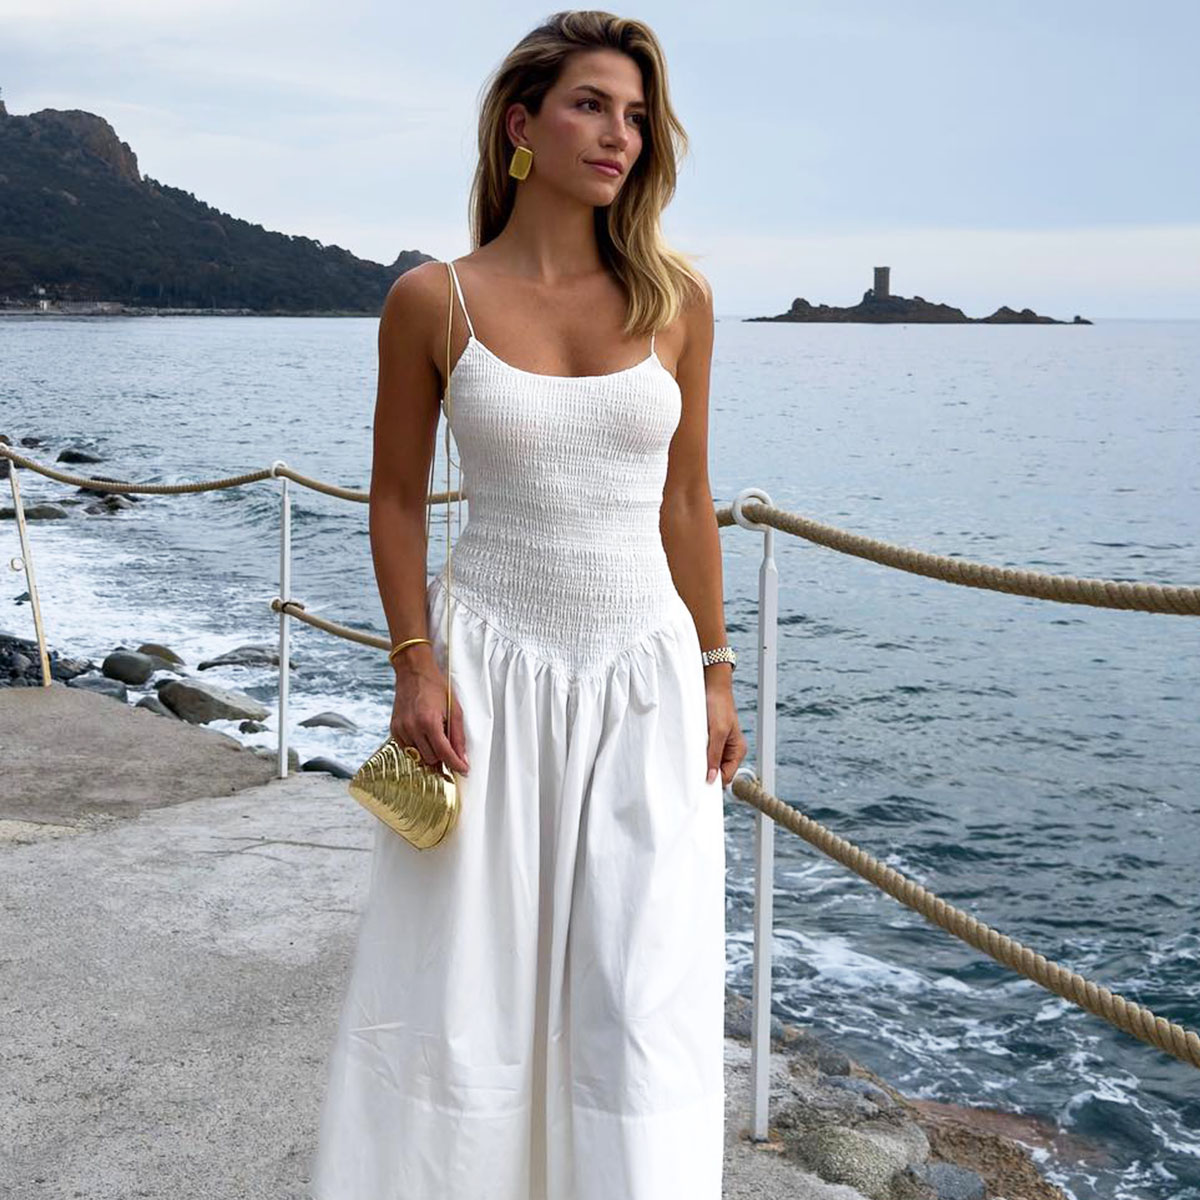 Cotton beach dress - White - Ladies | H&M IN